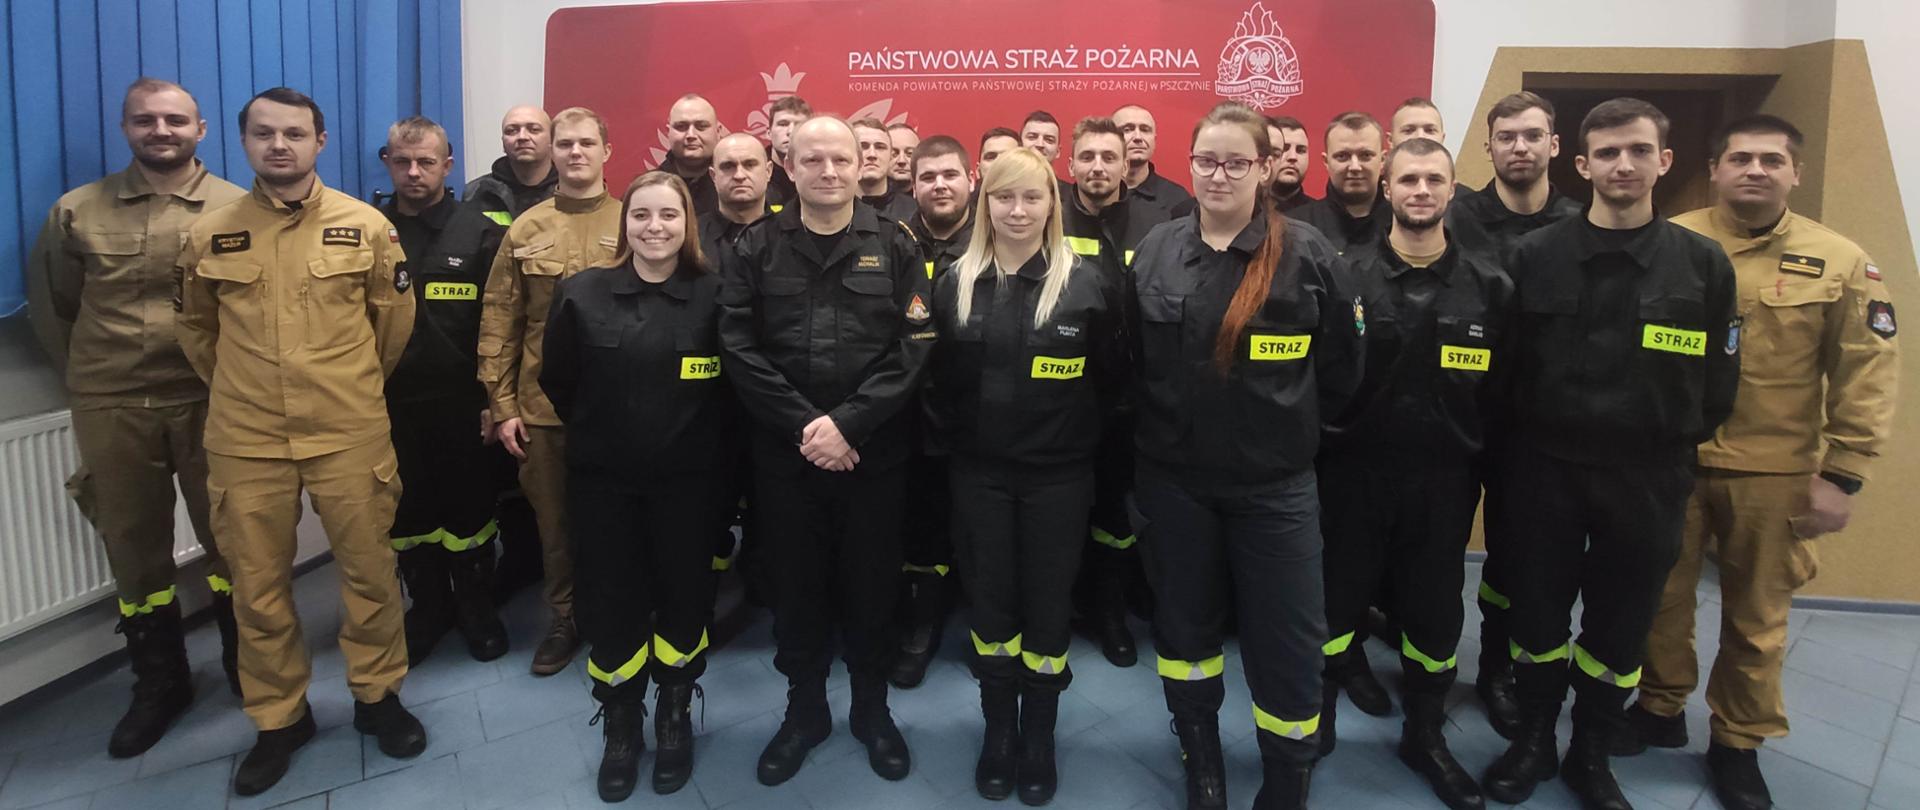 Na zdjęciu są druhowie z jednostek OSP którzy ukończyli szkolenie wraz z członkami komisji egzaminacyjnej